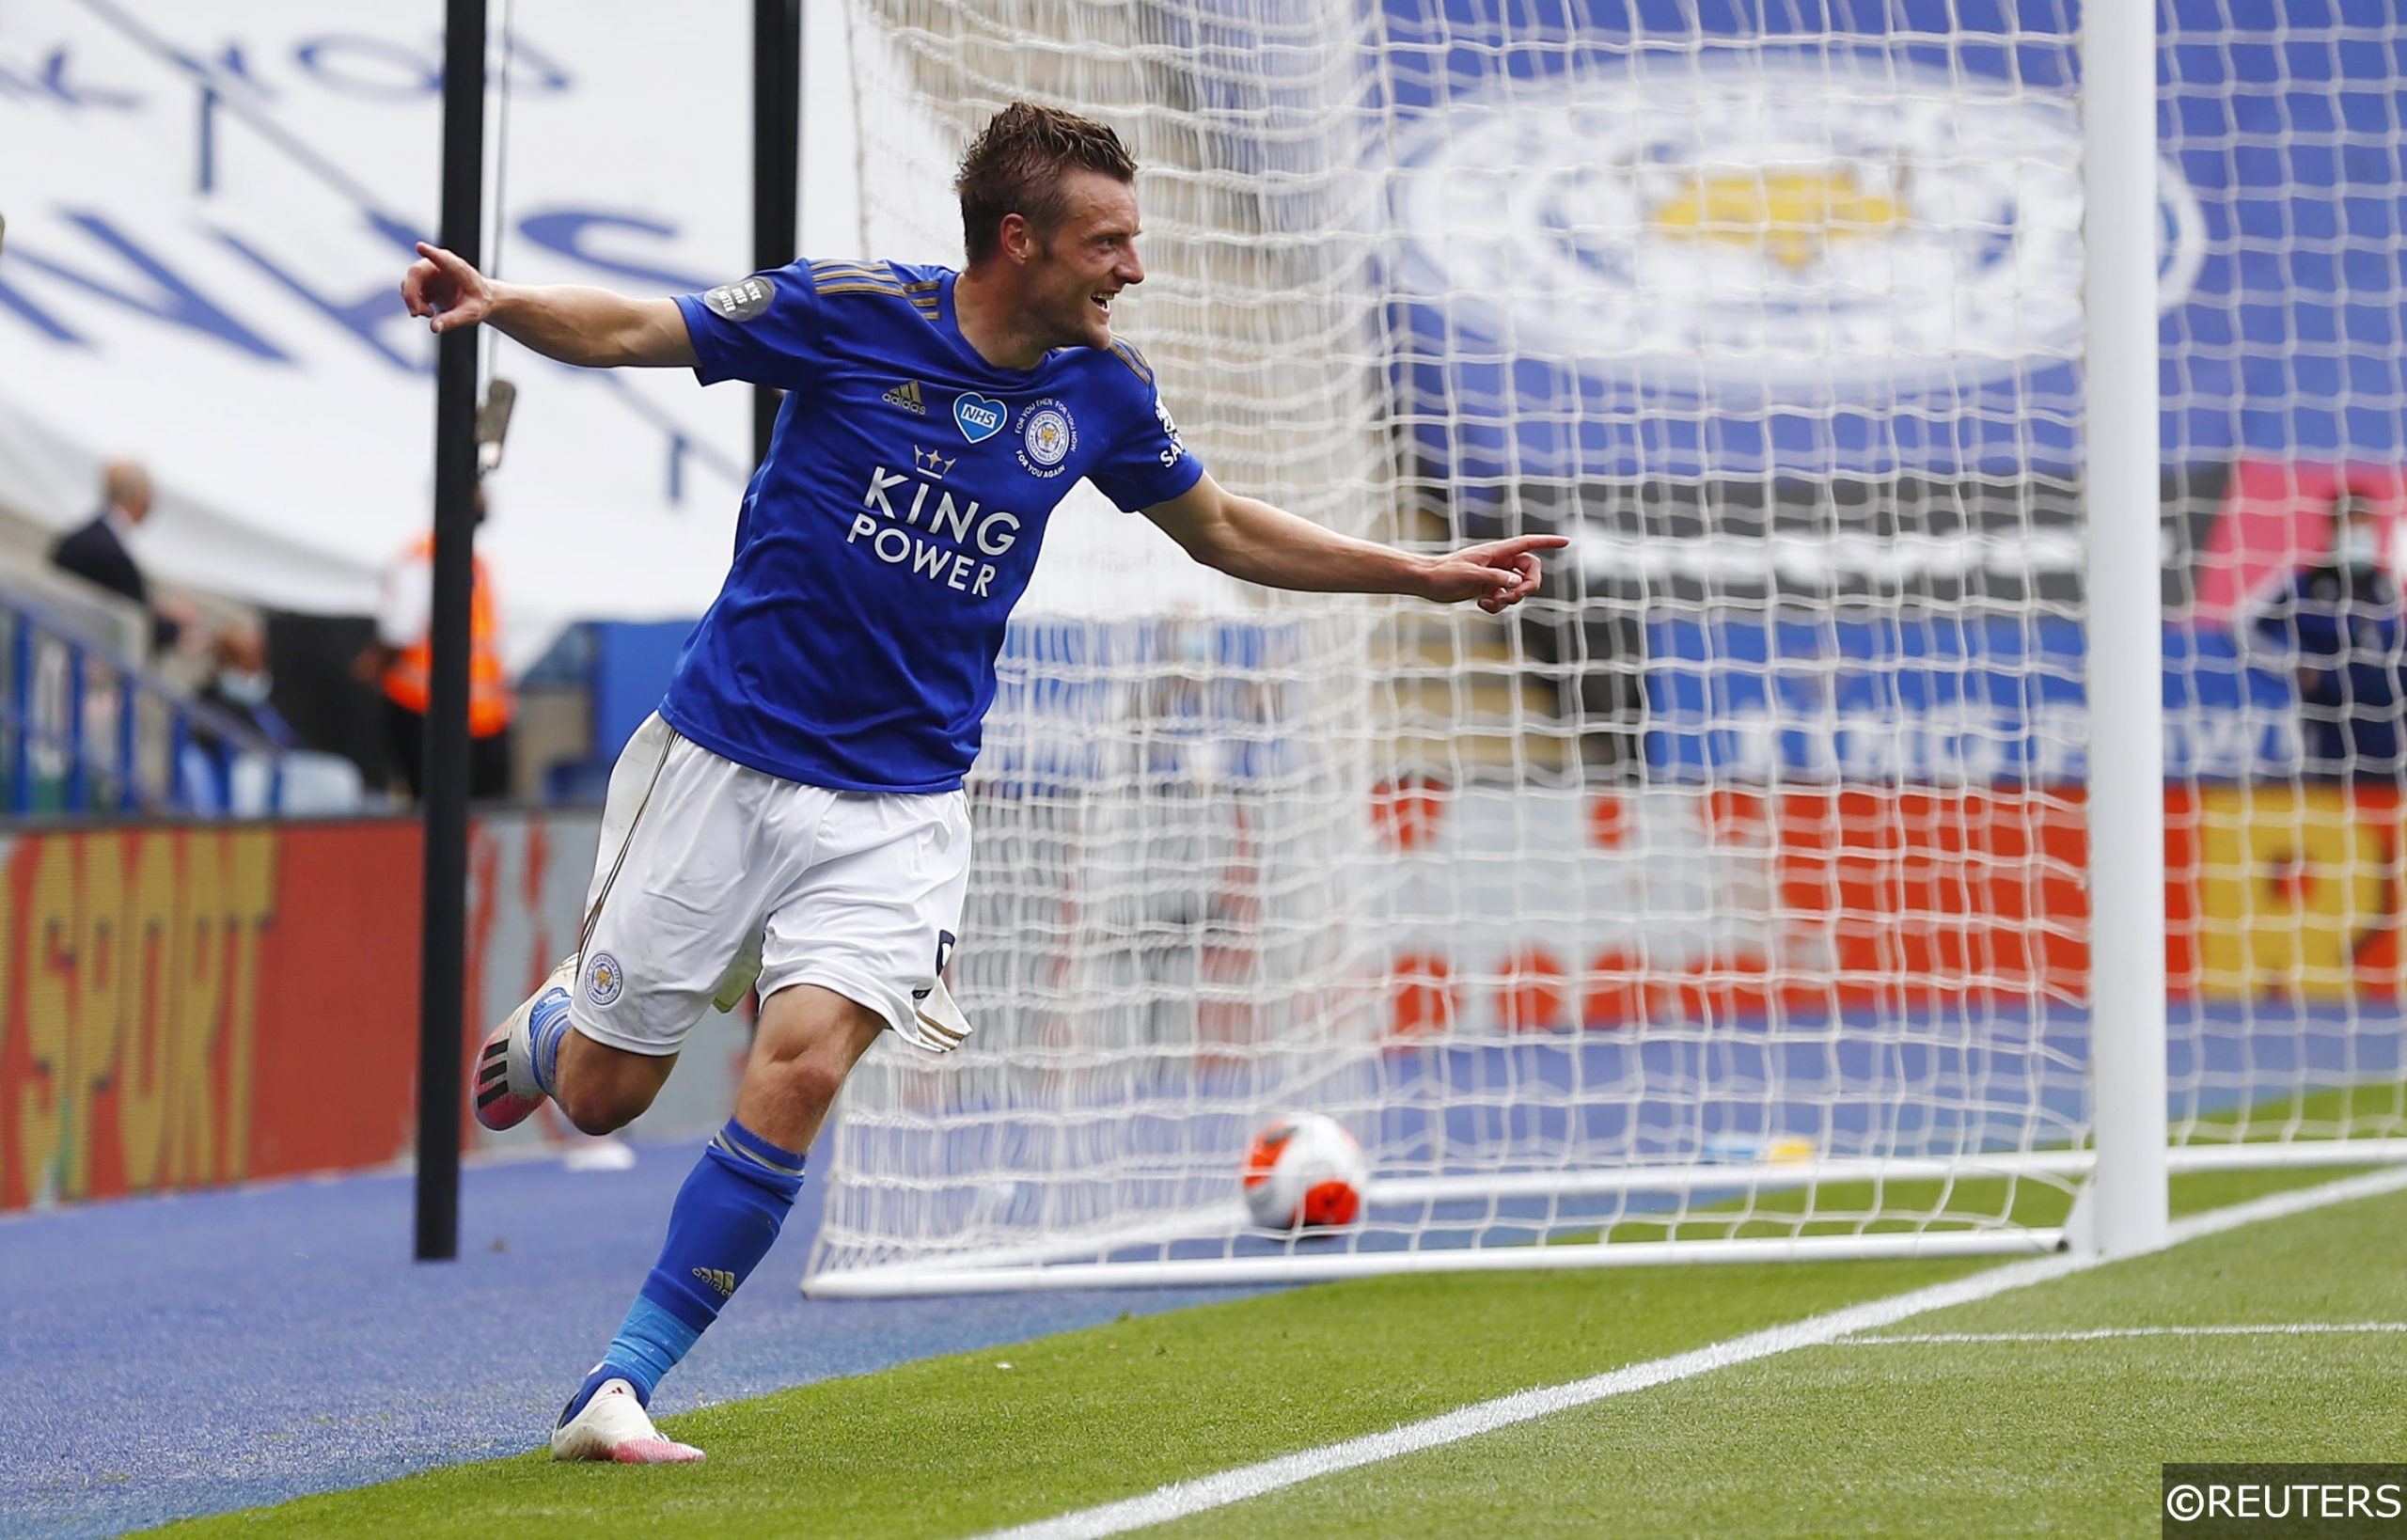 Leicester City forward Jamie Vardy